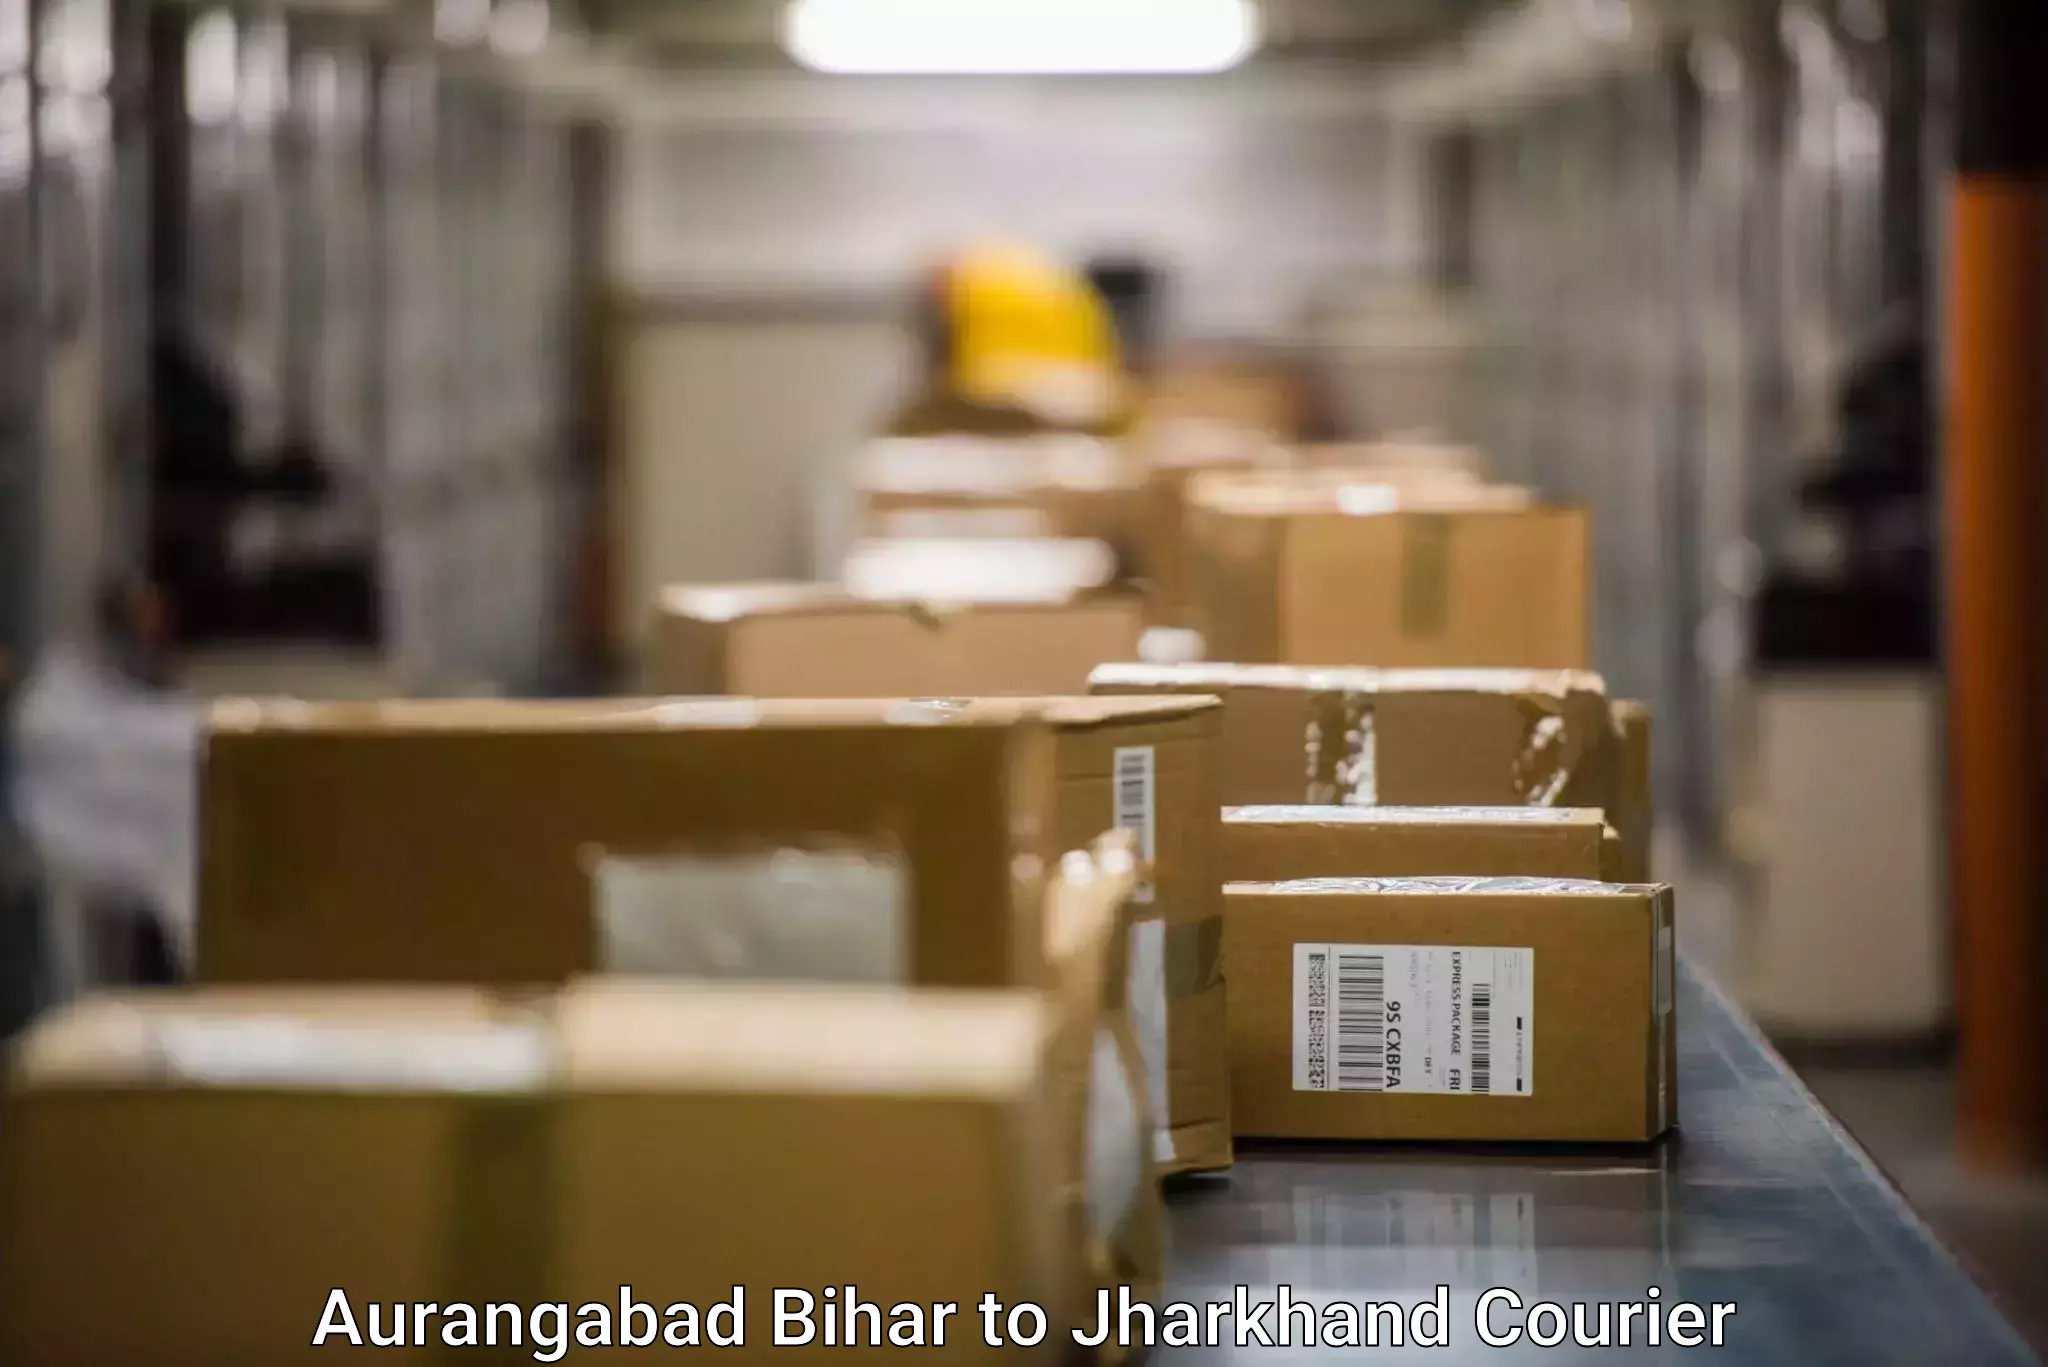 Express logistics service Aurangabad Bihar to Padma Hazaribagh